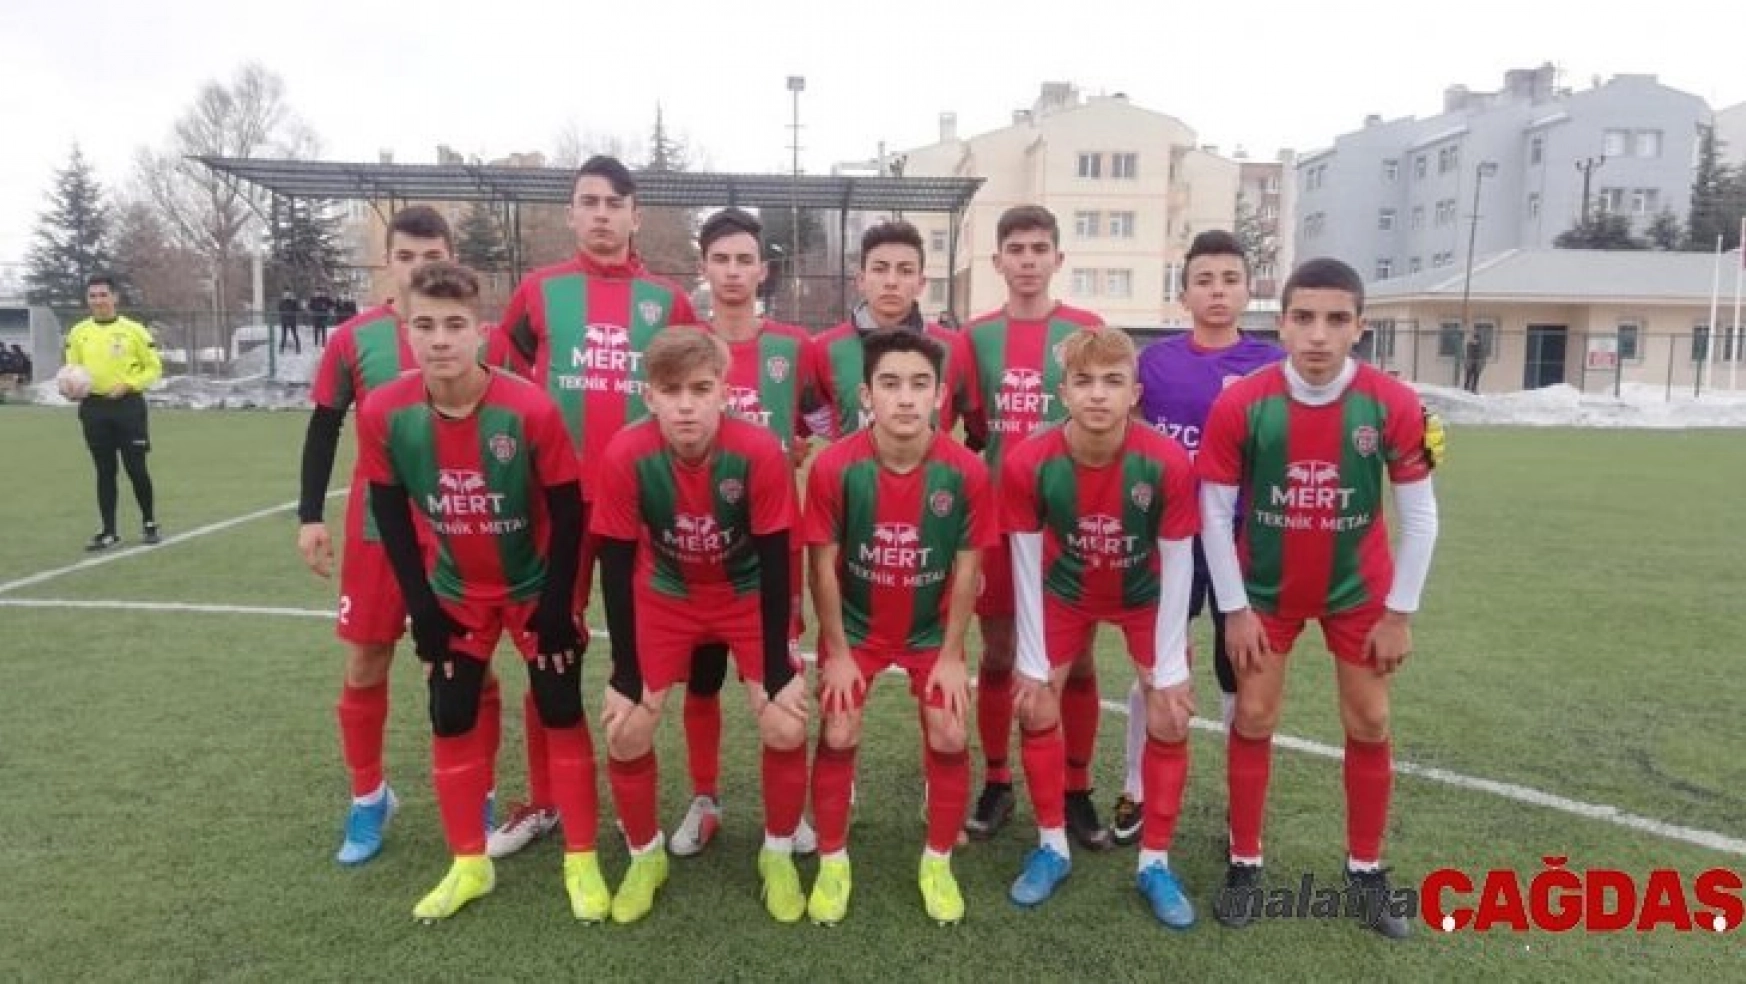 1308 Osmaneli Belediye Spor U16 takımı liderliğe yükseldi